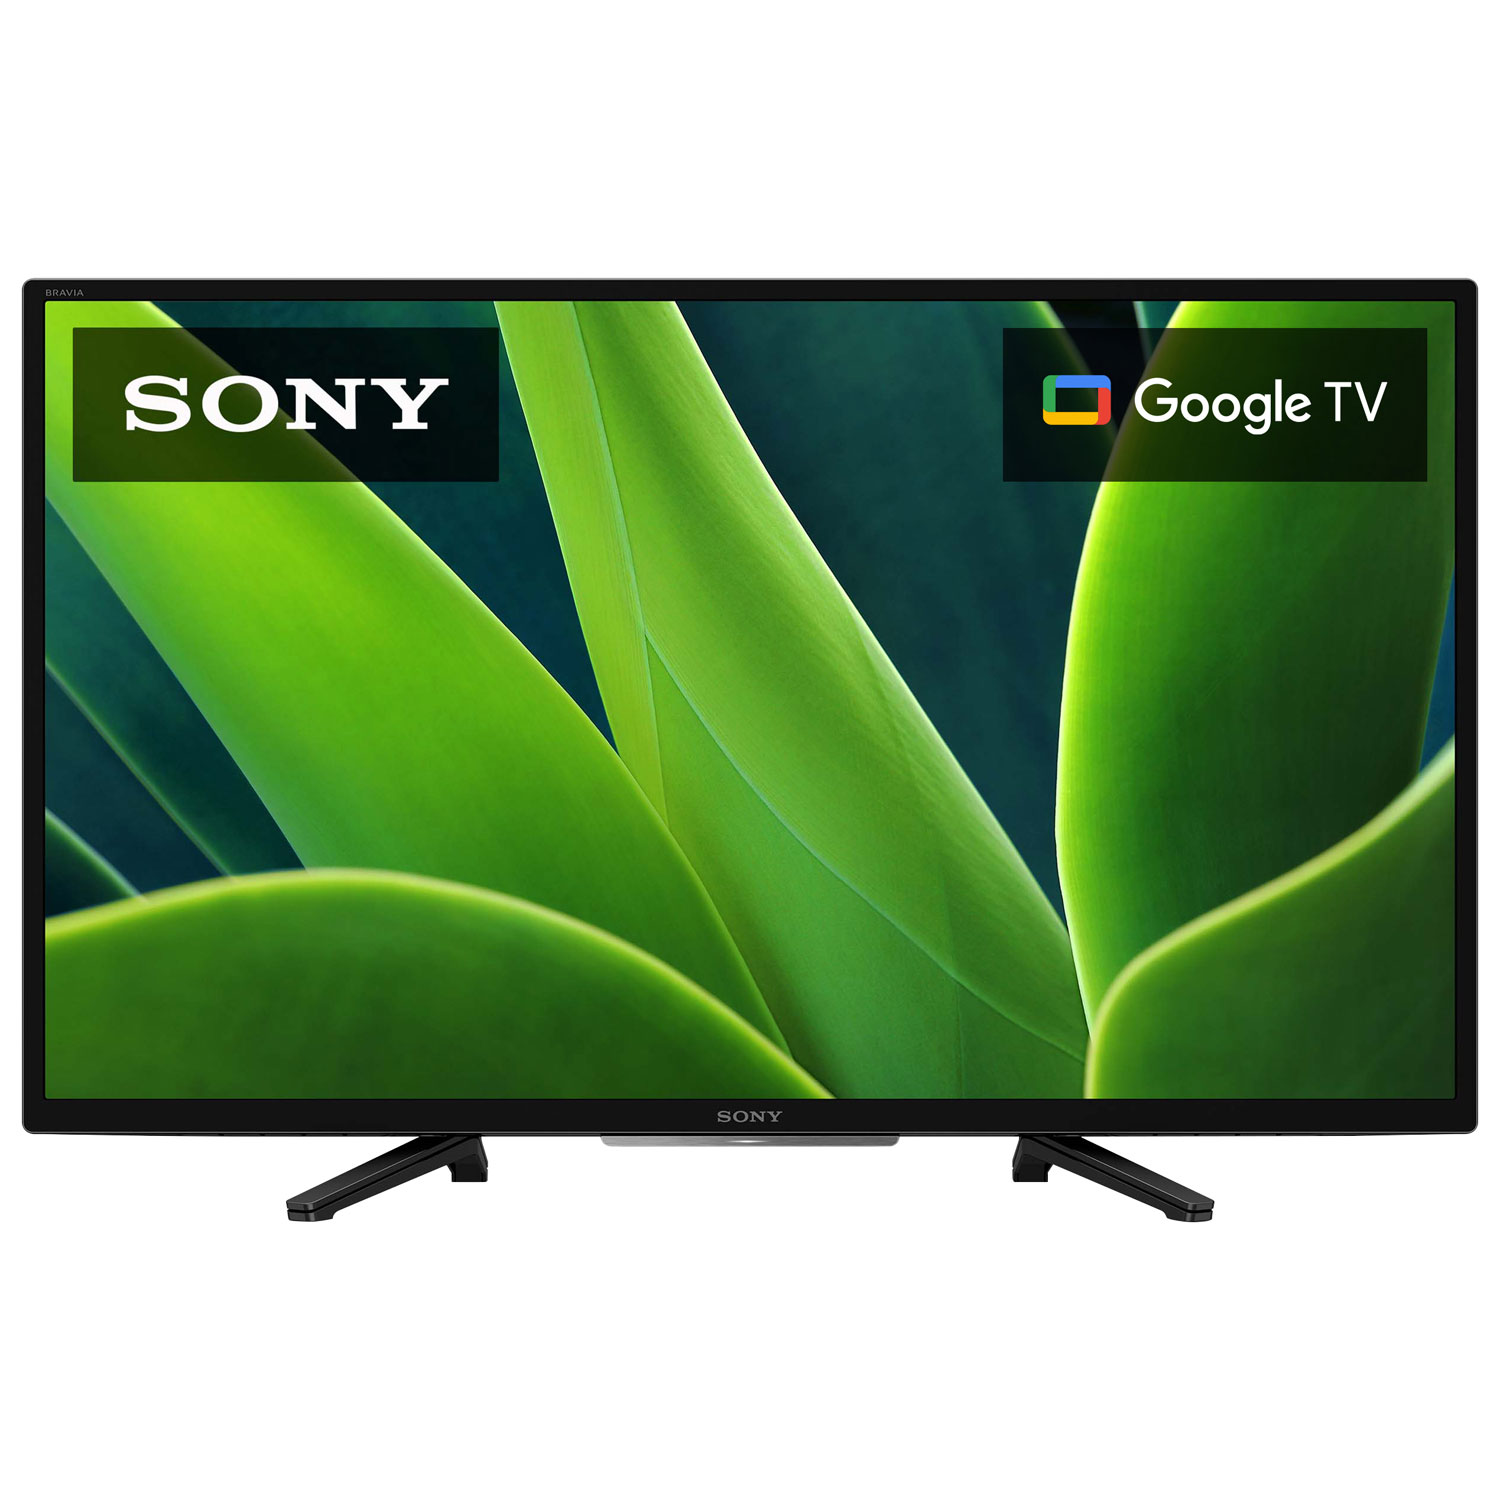 Sony W830K 32" 720p HD HDR LED Smart Google TV (KD32W830K) - 2022